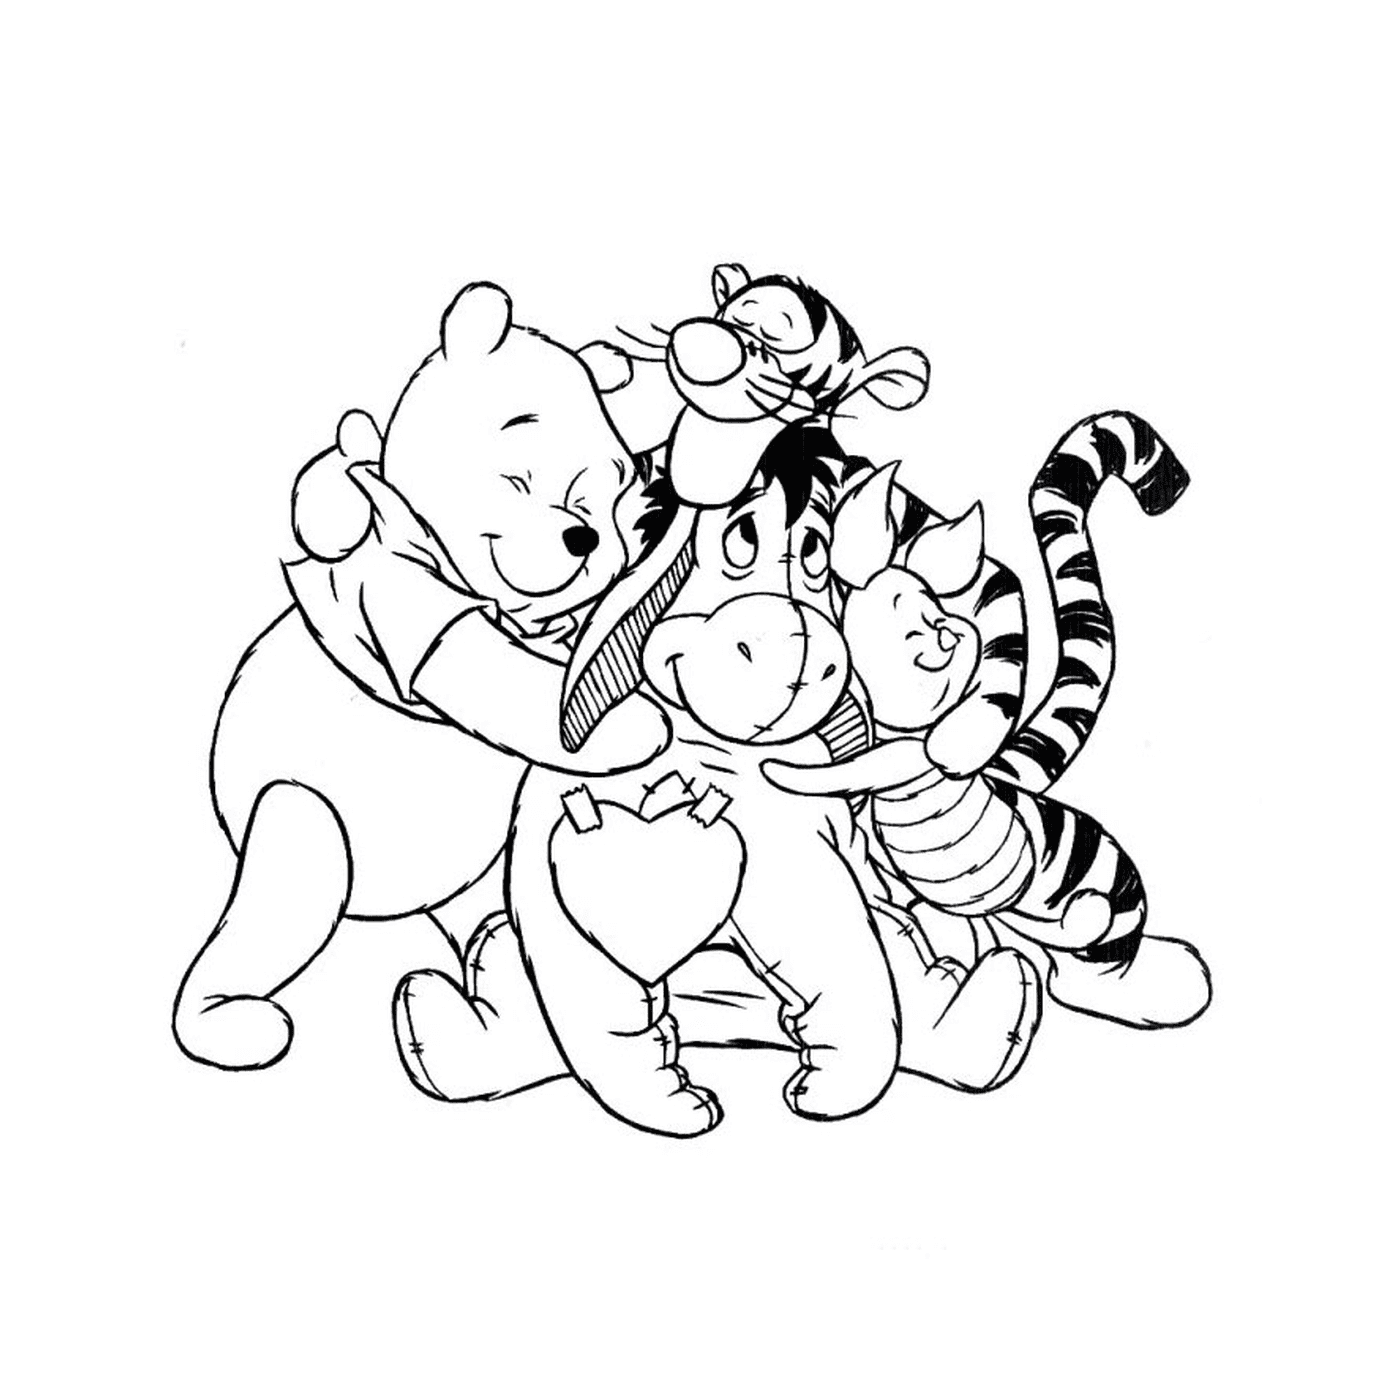  Winnie el oso y sus amigos 